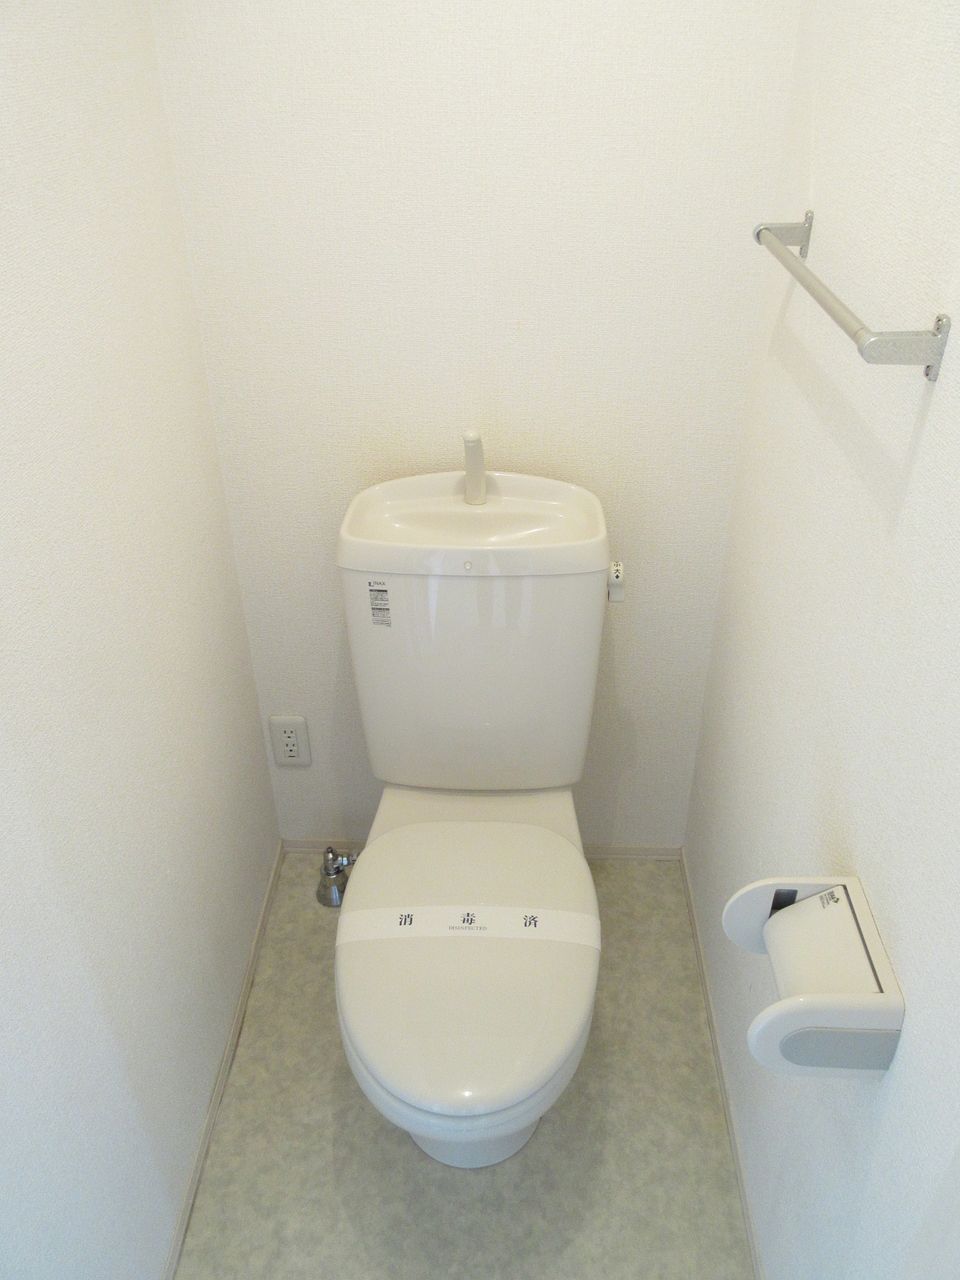 バスルーム・トイレの独立設計で快適な毎日